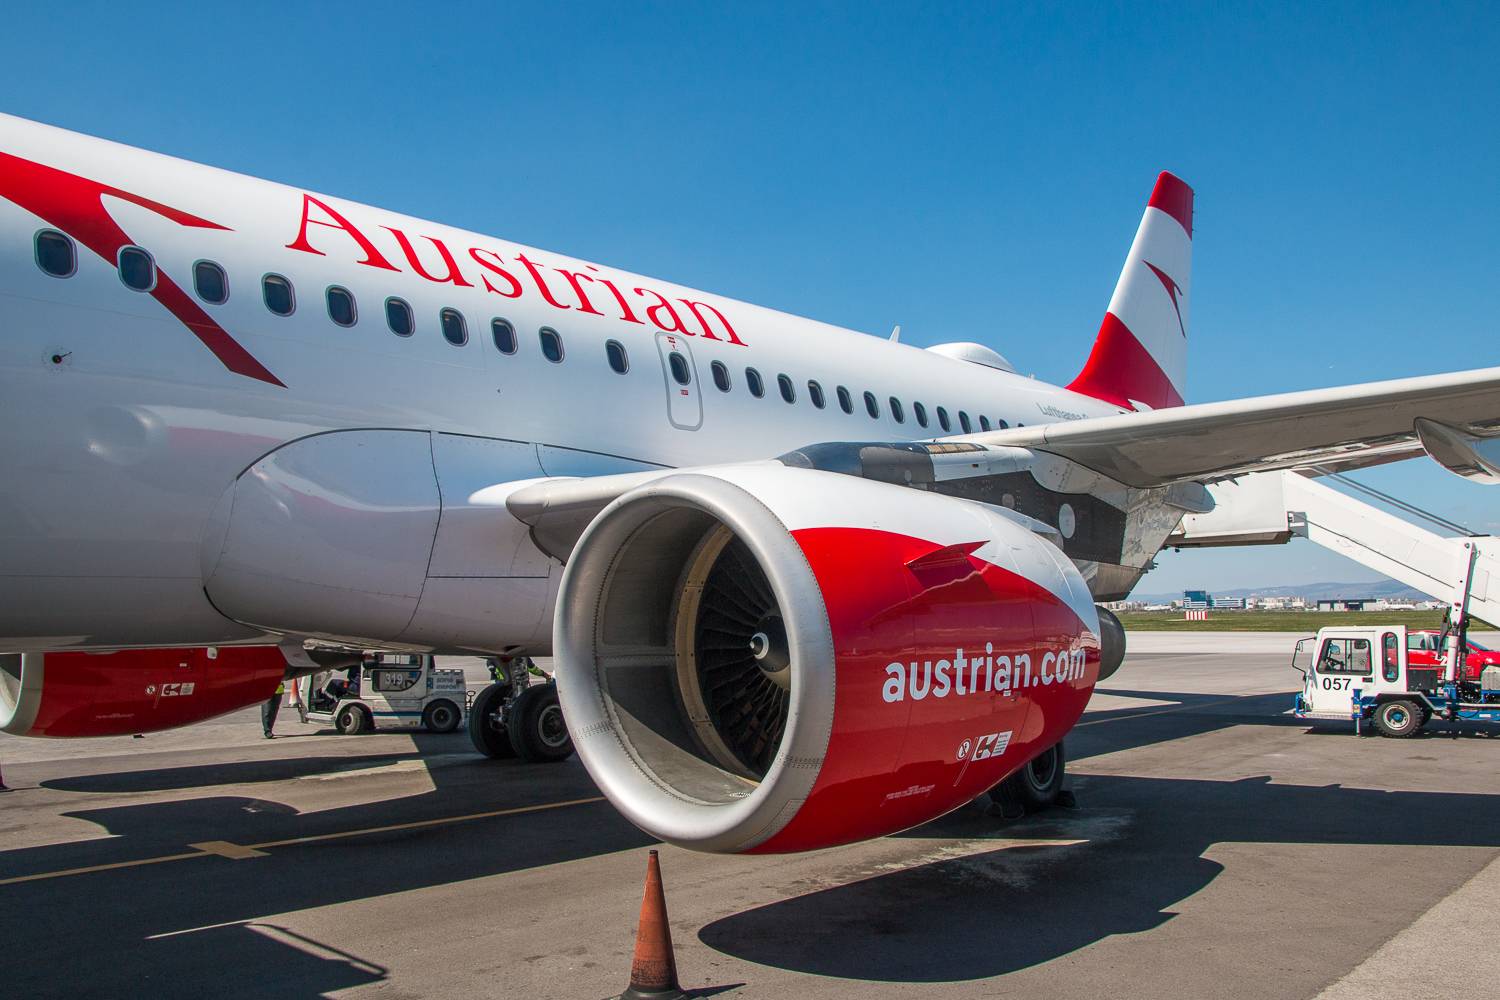 Об авиакомпании австрийские авиалинии (аустриан эйрлайнс), правила регистрации, перелетов, провоза багажа и ручной клади